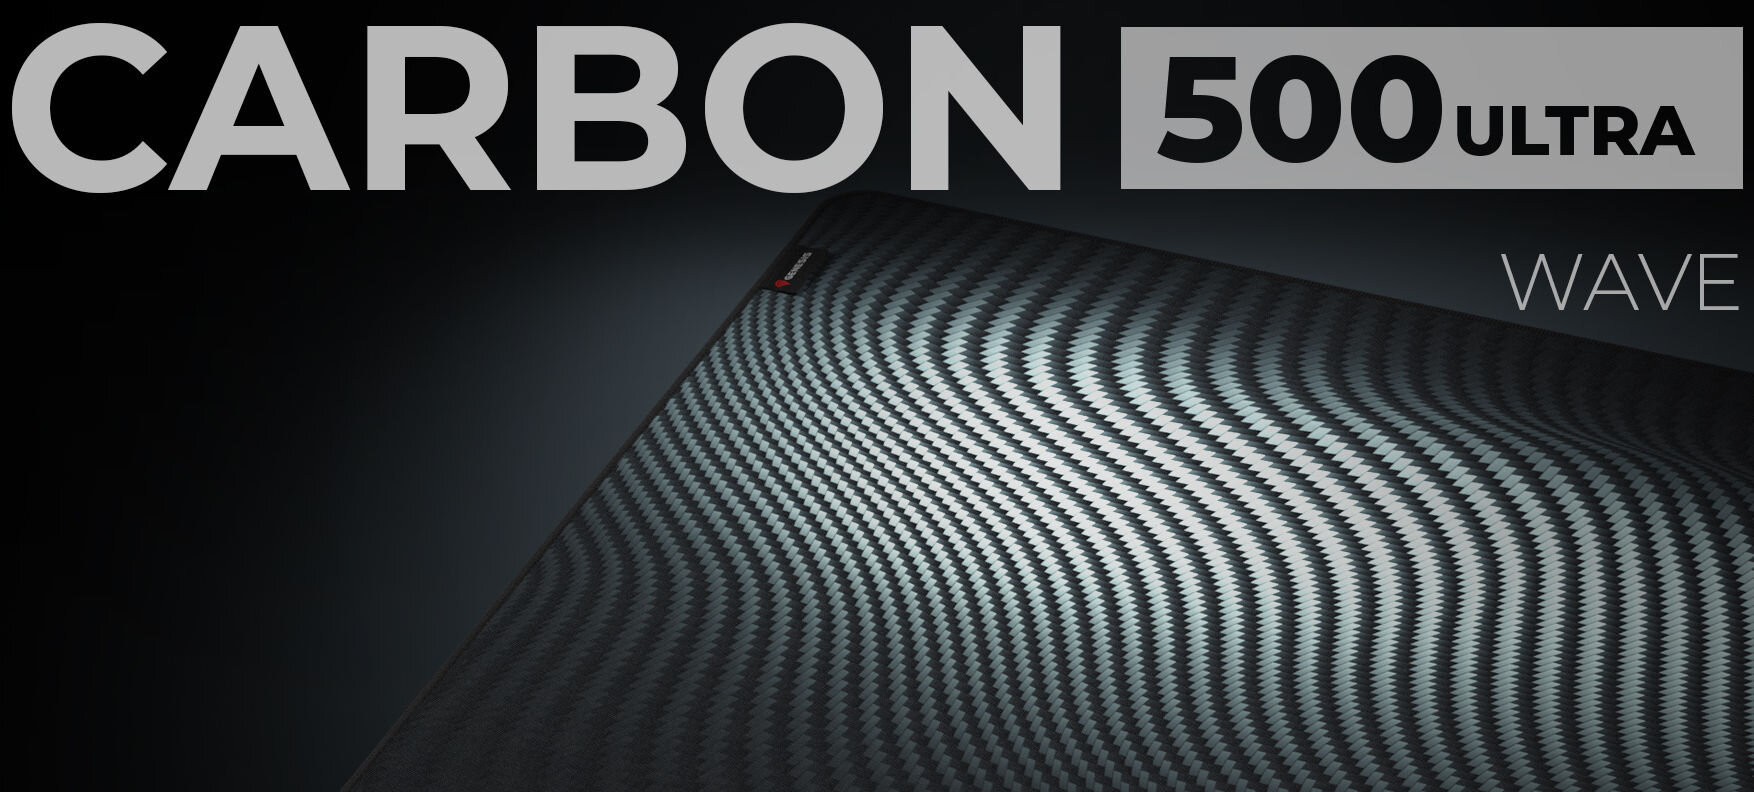 Podkładka GENESIS Carbon 500 Ultra Wave wierzchnia podkładka wysoka precyzja niski profil design trwałość wilgoć 